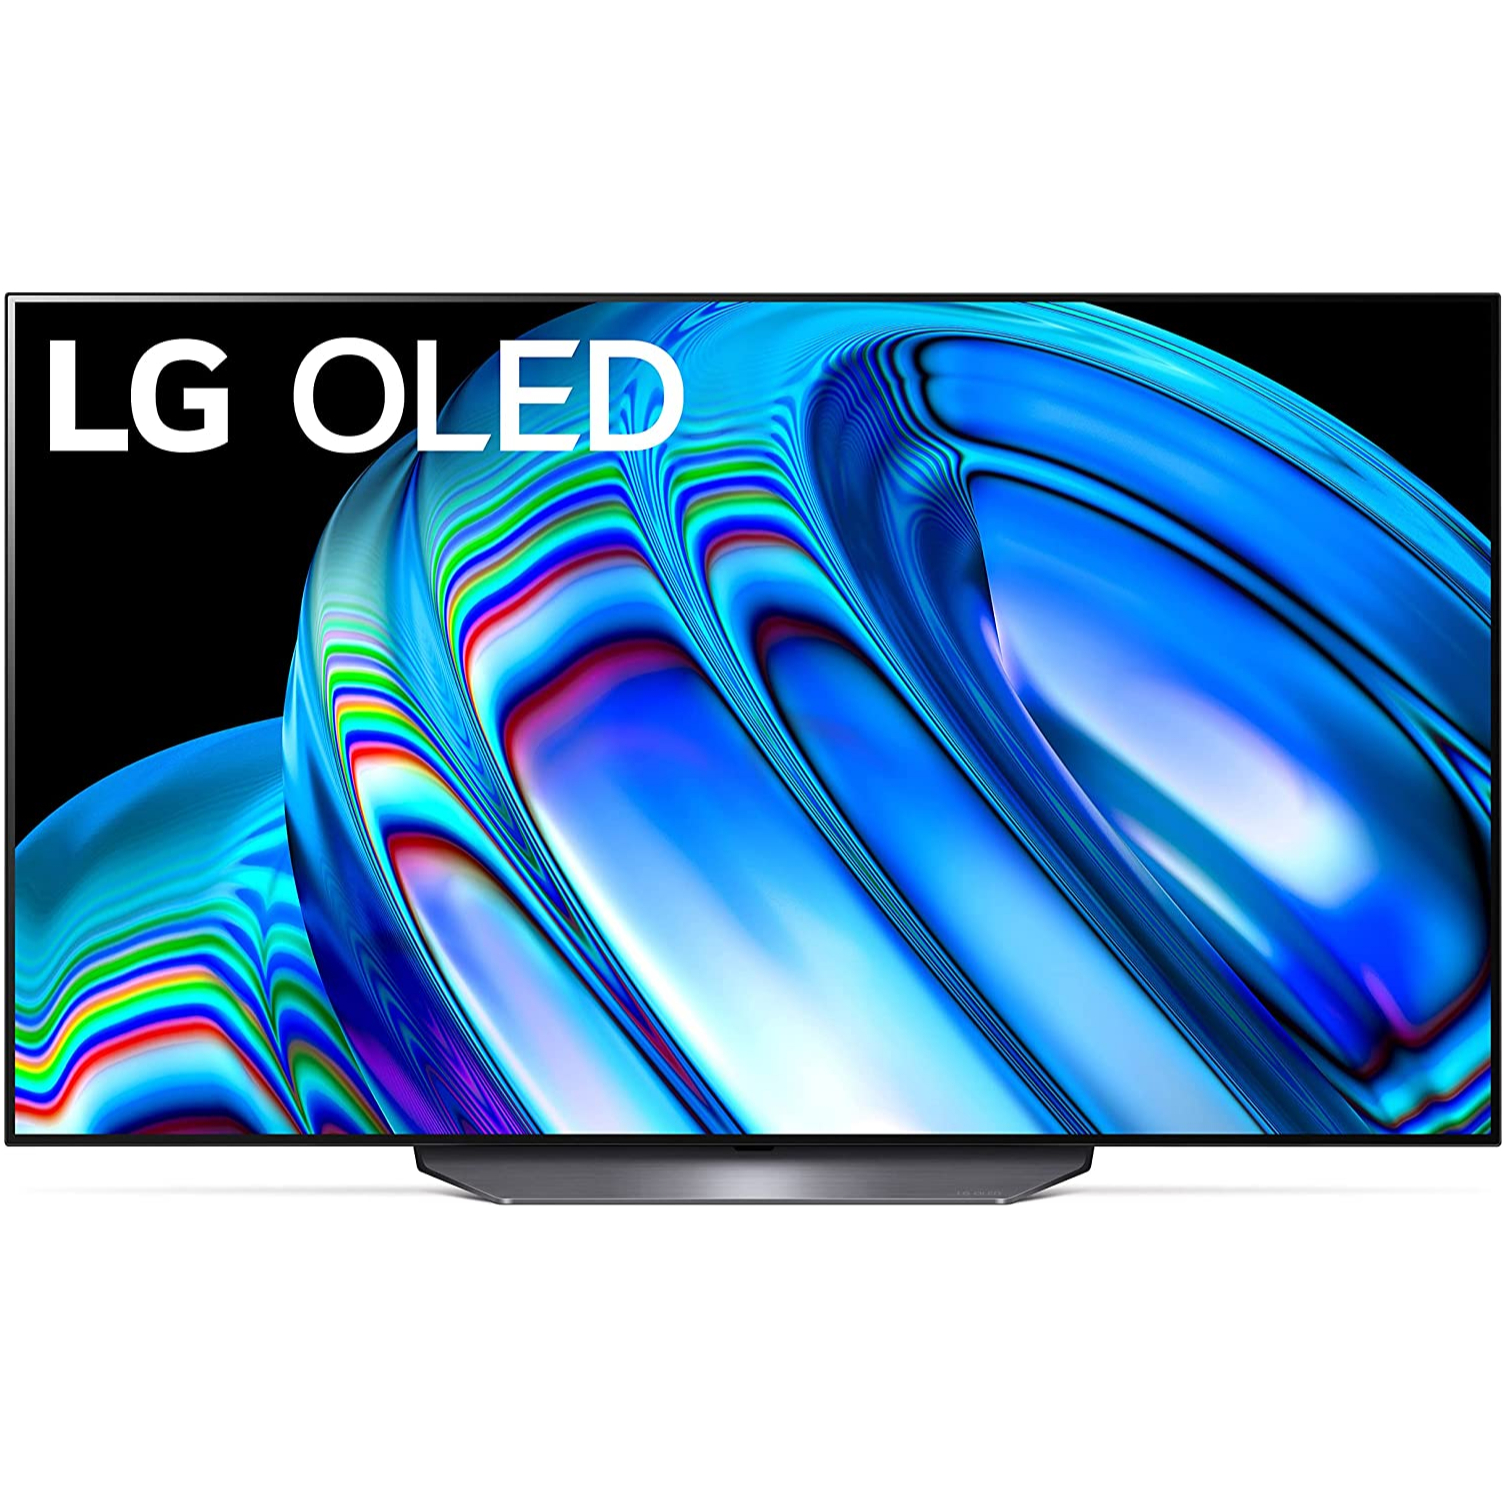 LG B2 OLED TV